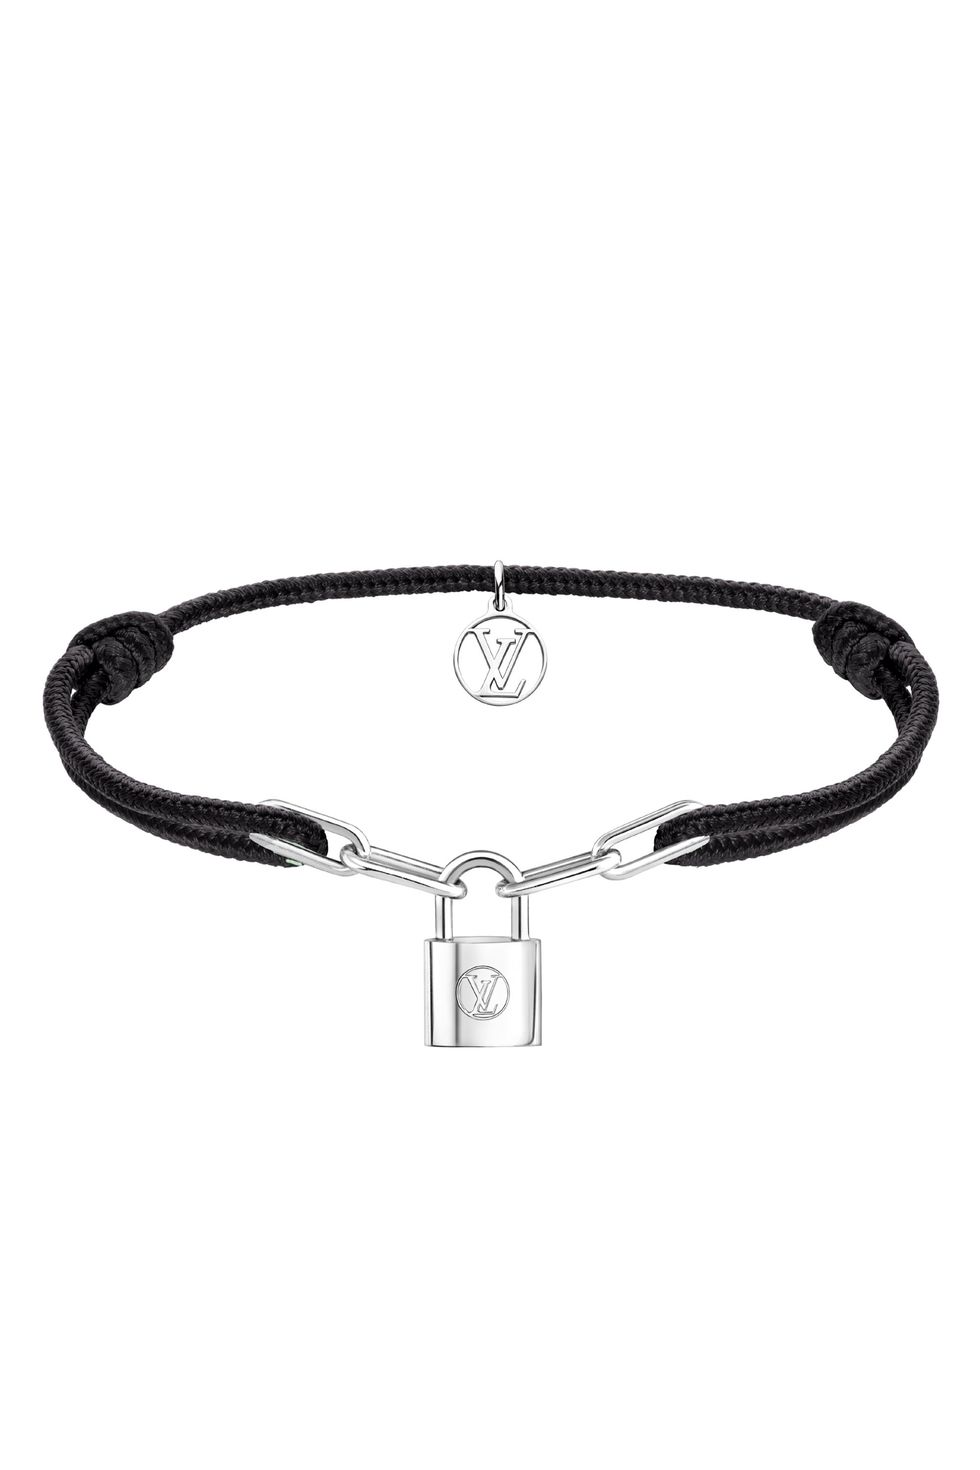 Louis Vuitton Black Fashion Bracelets for sale